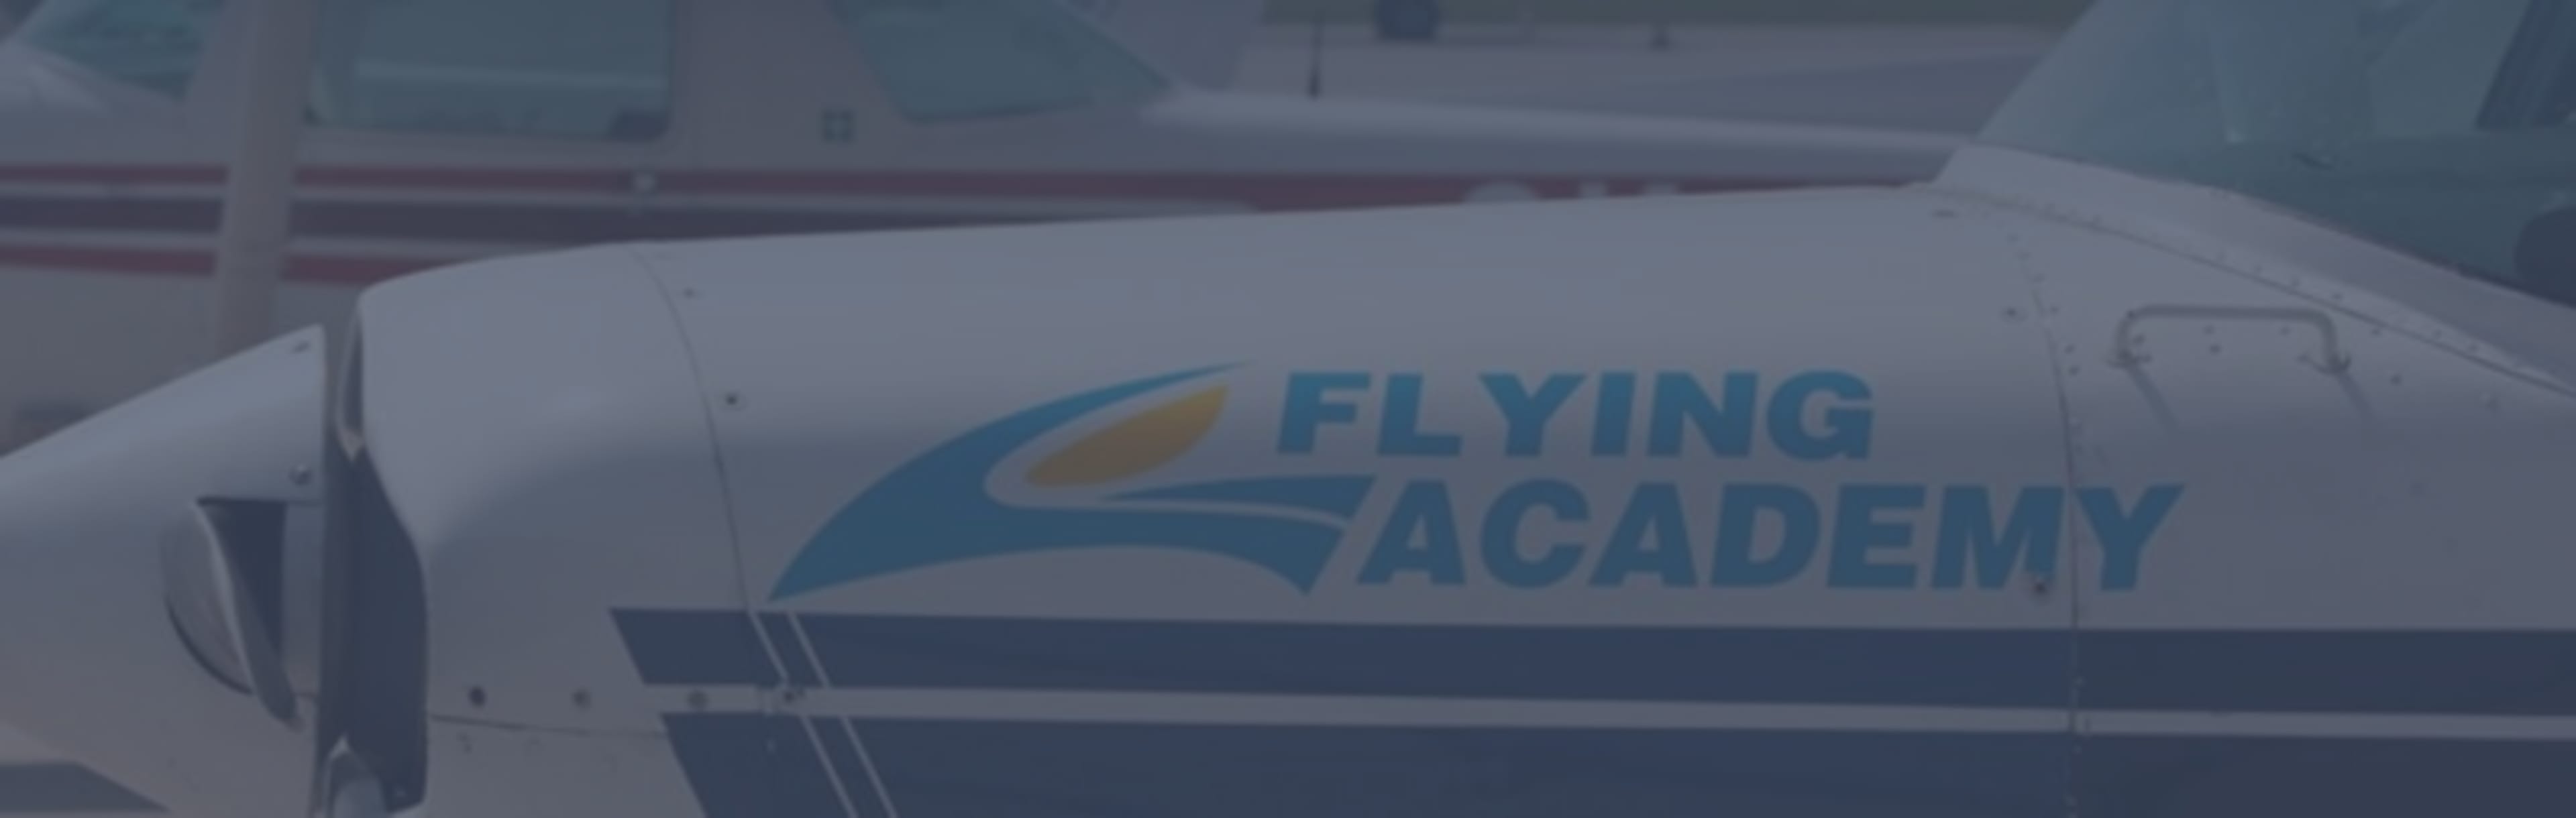 Flying Academy FAA entrenamiento de vuelo de 0 a 1,500 horas con posibilidad de empleo.